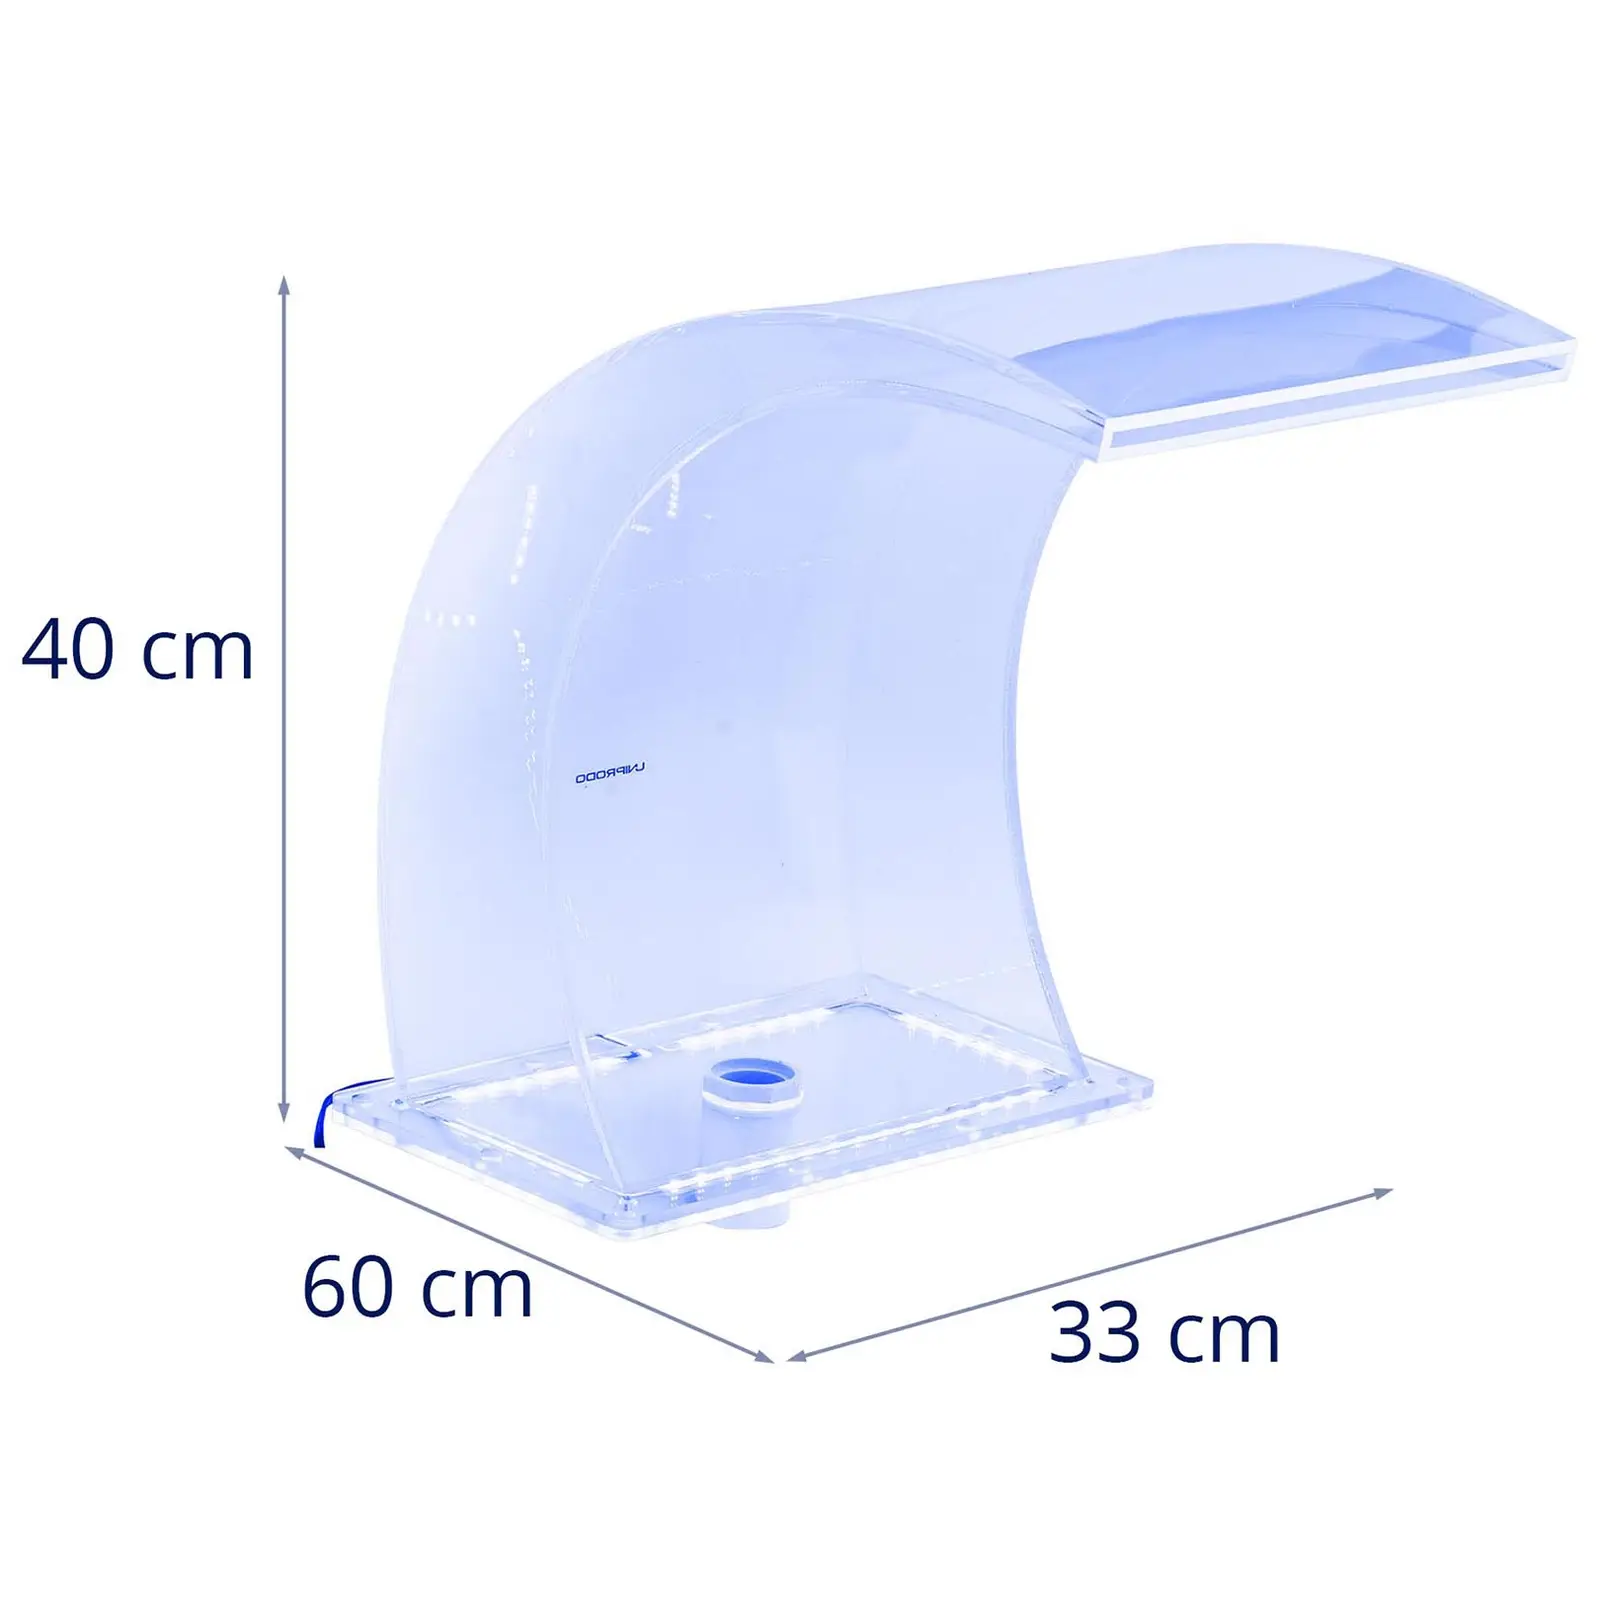 Medence szökőkút - 33 cm - LED világítás - kék/fehér - 303 mm-es vízkivezető nyílás